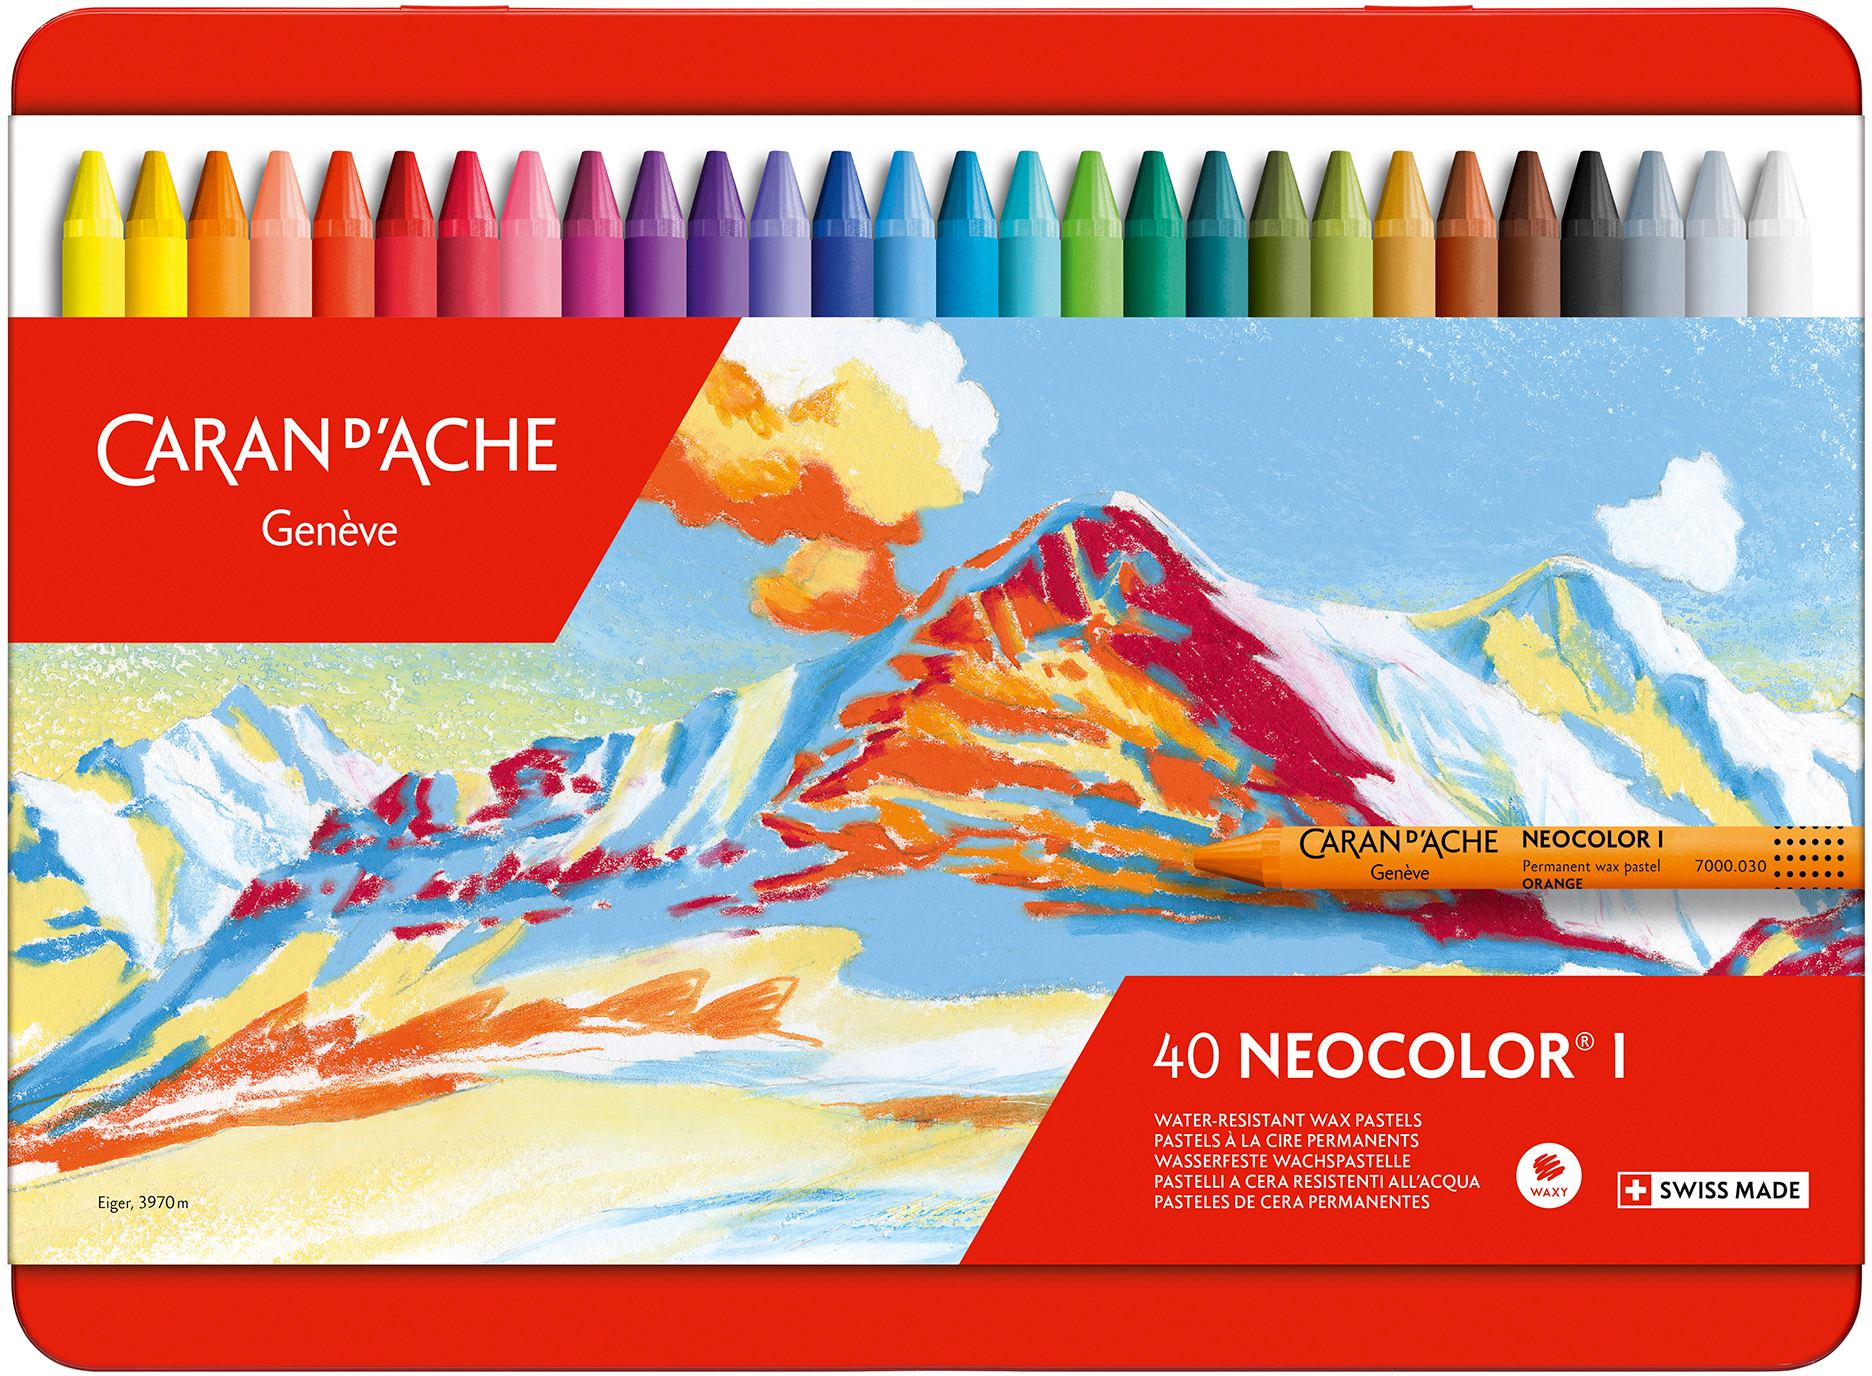 CARAN D'ACHE Crayons de cire Neocolor 1 7000.340 40 couleurs ass. box métal 40 couleurs ass. box mét